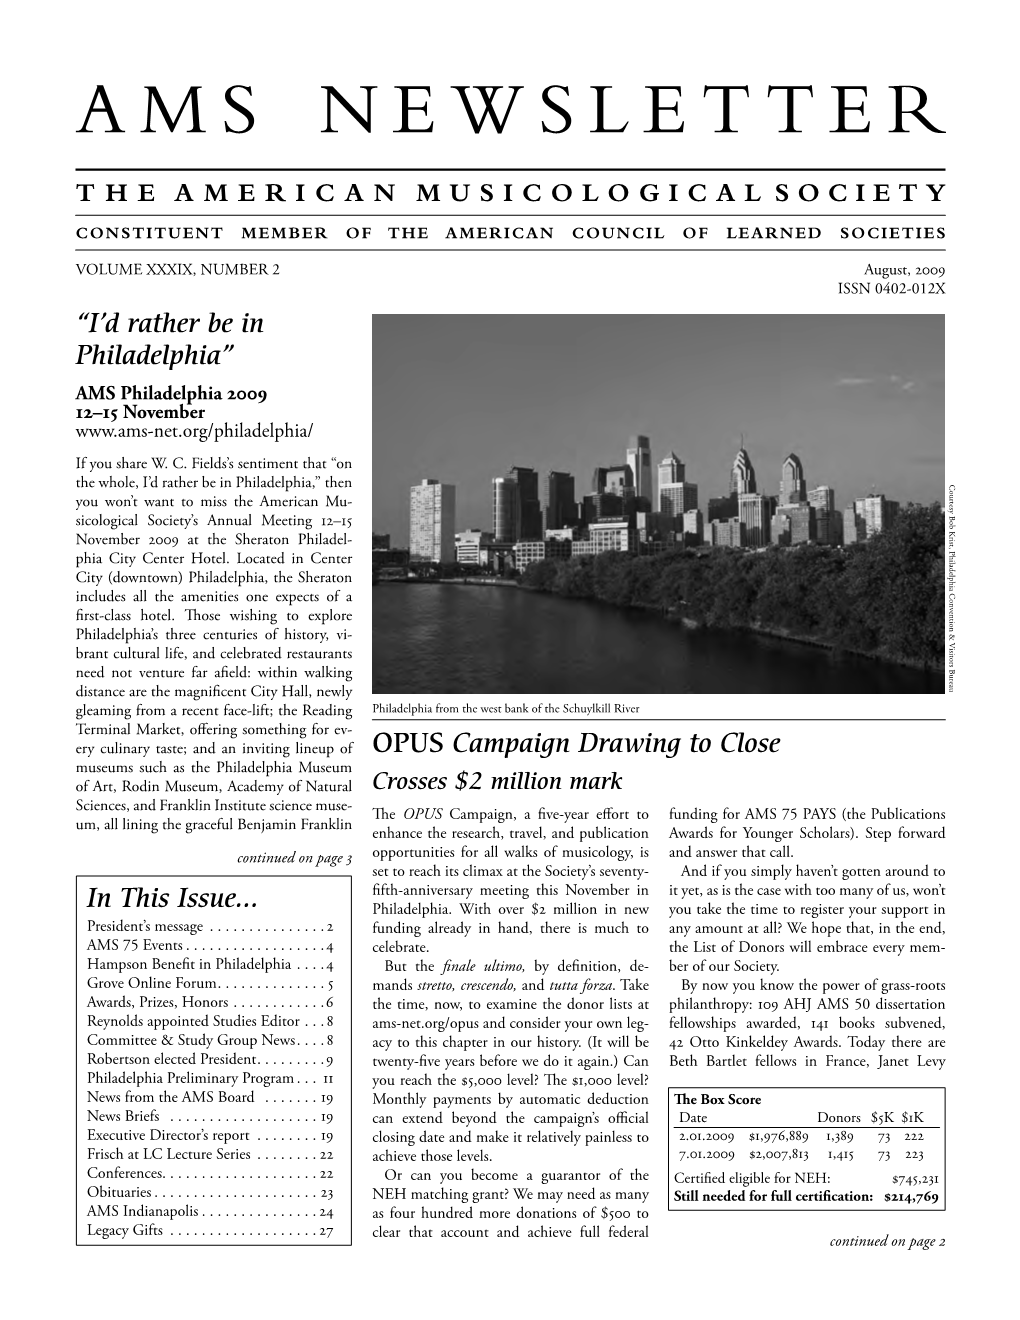 AMS Newsletter August 2009